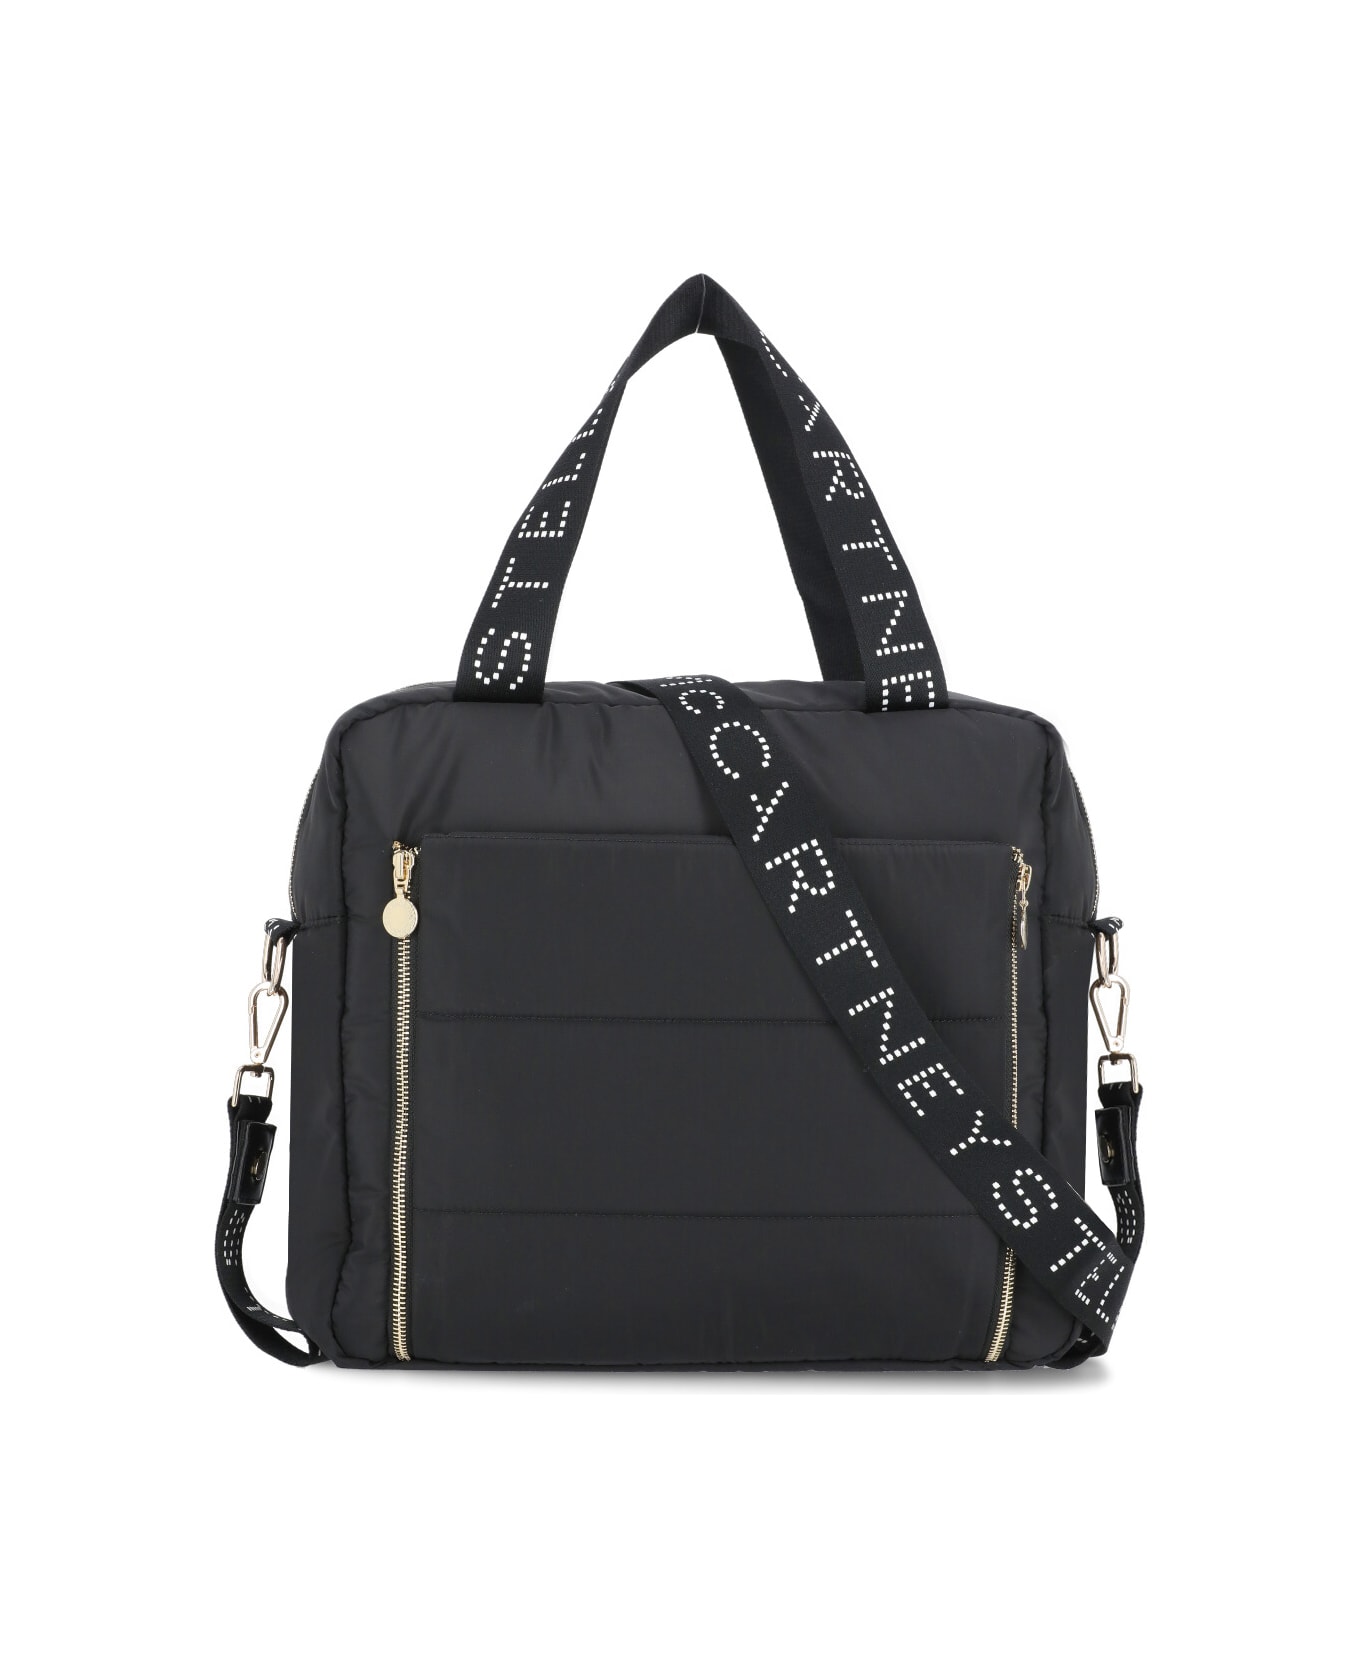 Stella McCartney Changing Bag With Logo - Black